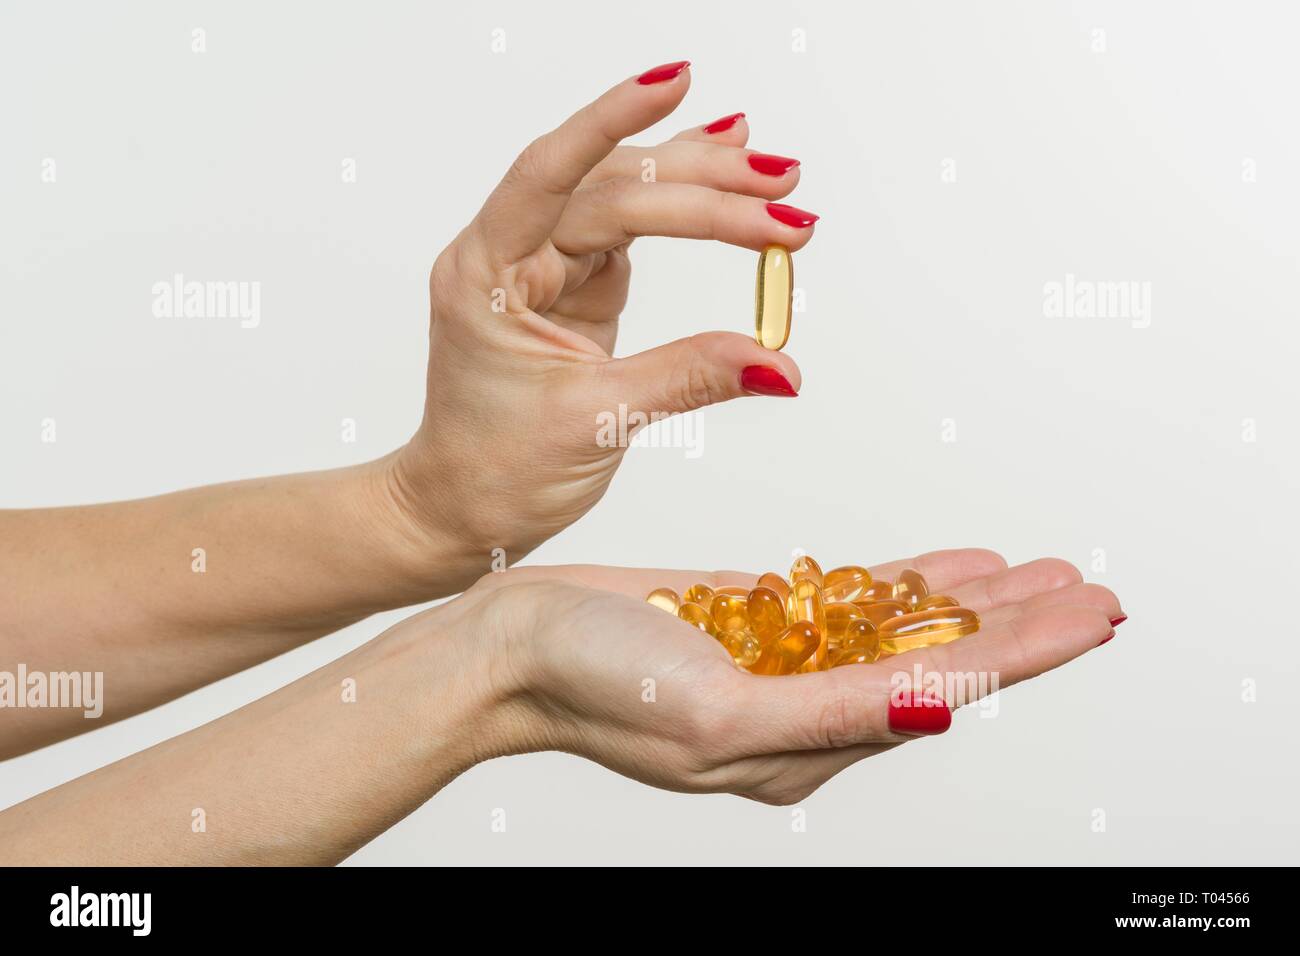 Hand holding capsule of Omega 3 on white background Stock Photo